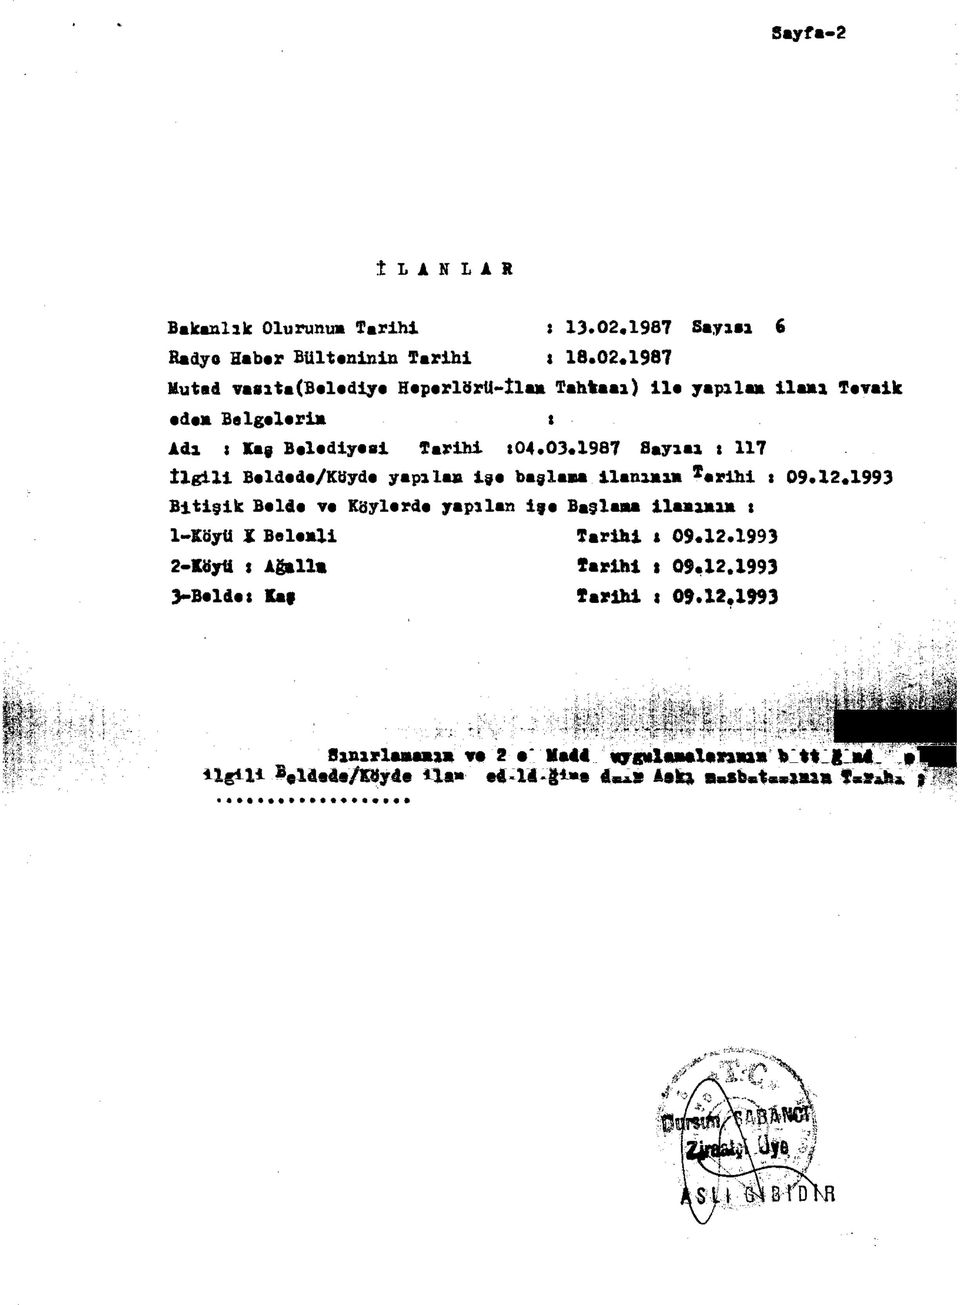 1987 Muted vasita(belediye Heperlörü-İlan Tahtaaı) ile yapılan ilanı Tevaik eden Belgelerin : Adı : Kaş Belediyesi Tarihi :04.03.1987 S.